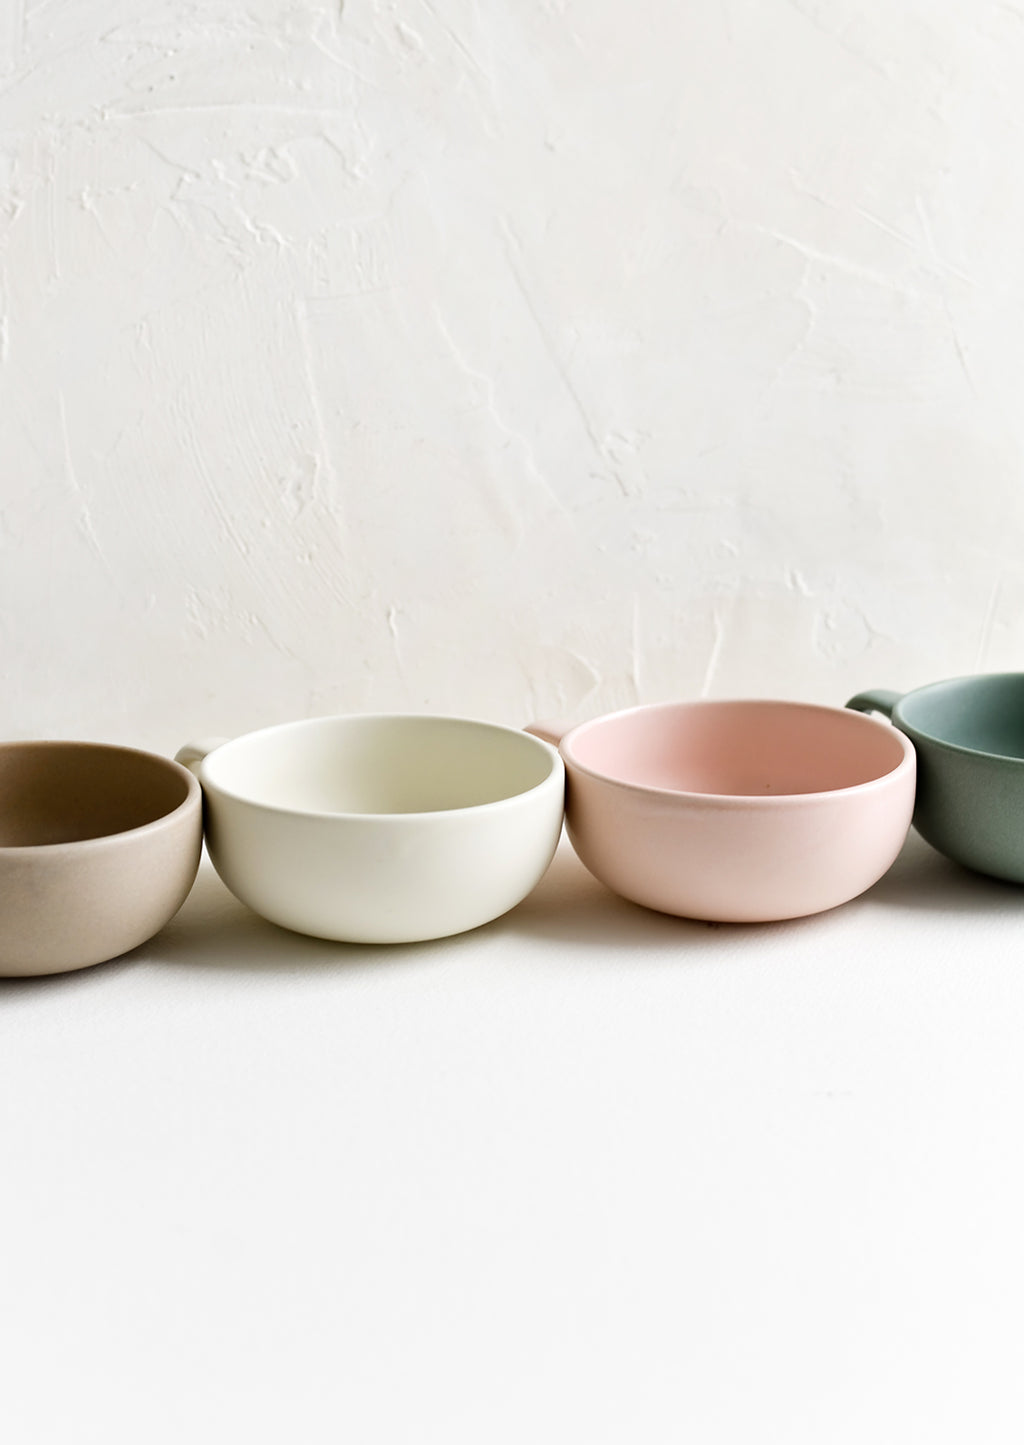 4: Assorted colors of ceramic mug bowls.